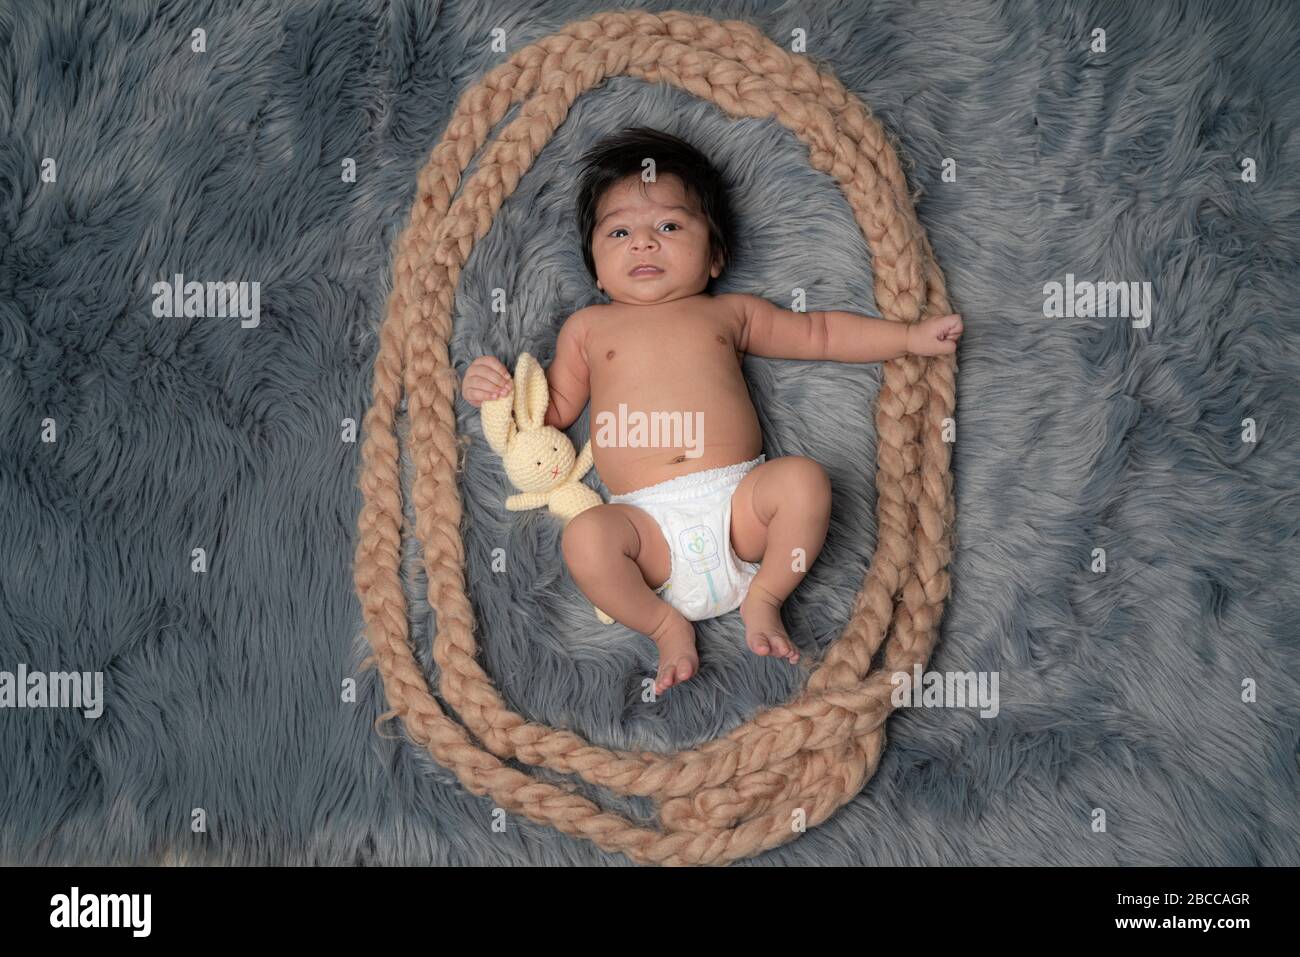 Porträt eines neugeborenen Jungen, Alter 1 Monat, in einer Windel, schwarzes Haar, blaue Augen auf grauen Pelzdecke mit einem Teddybären und lächelnd. Familie, Liebe, ch Stockfoto